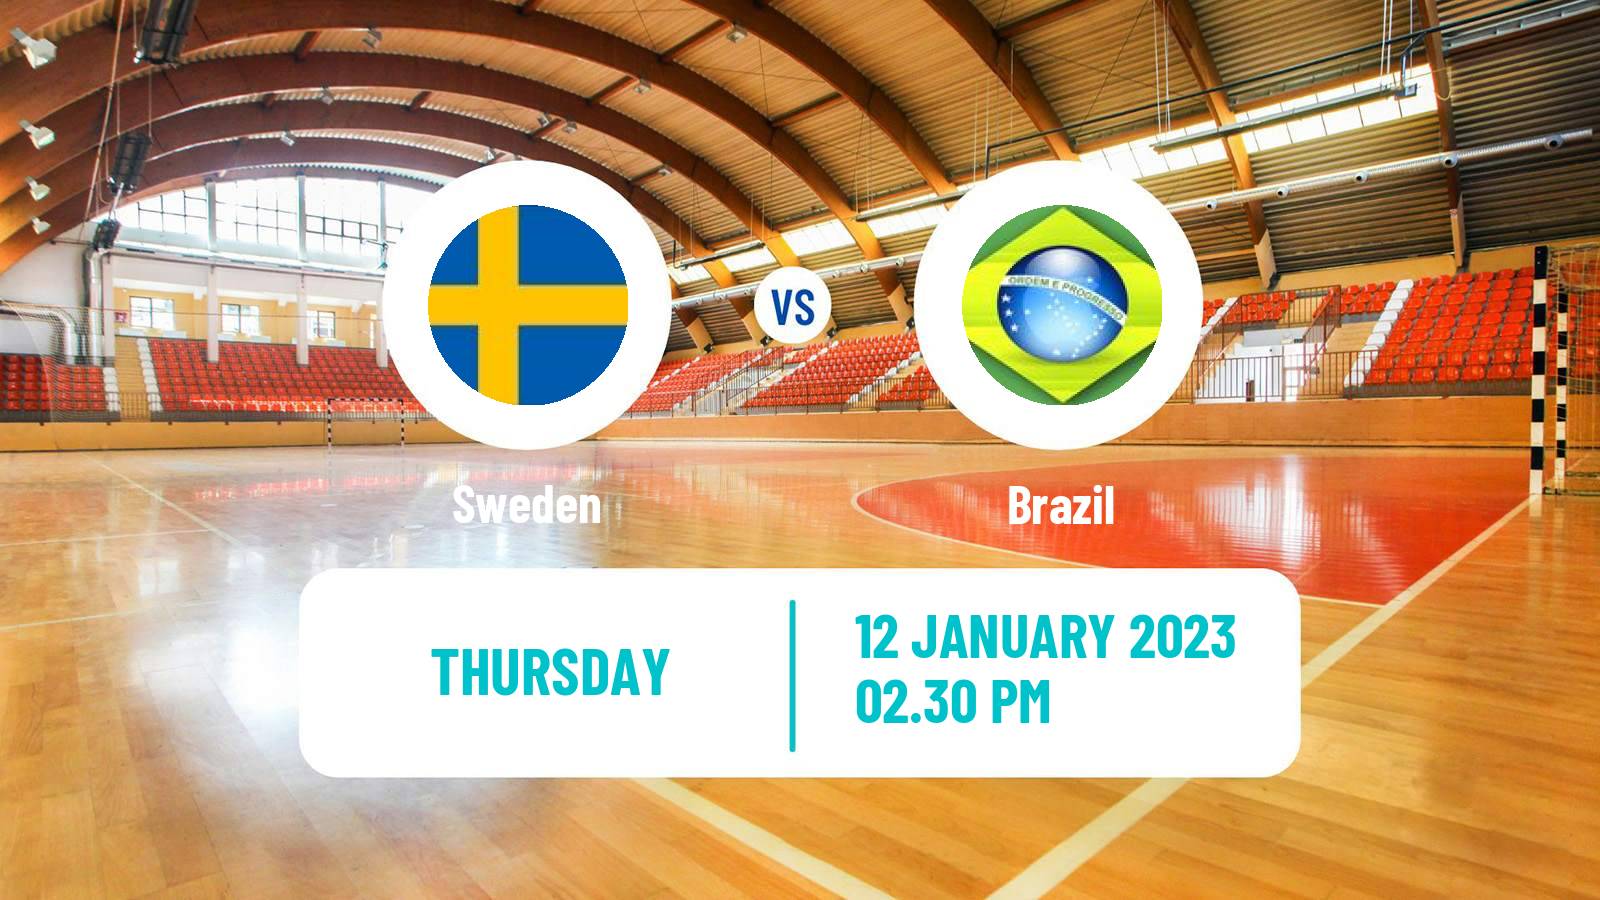 Handball Handball World Championship Sweden - Brazil